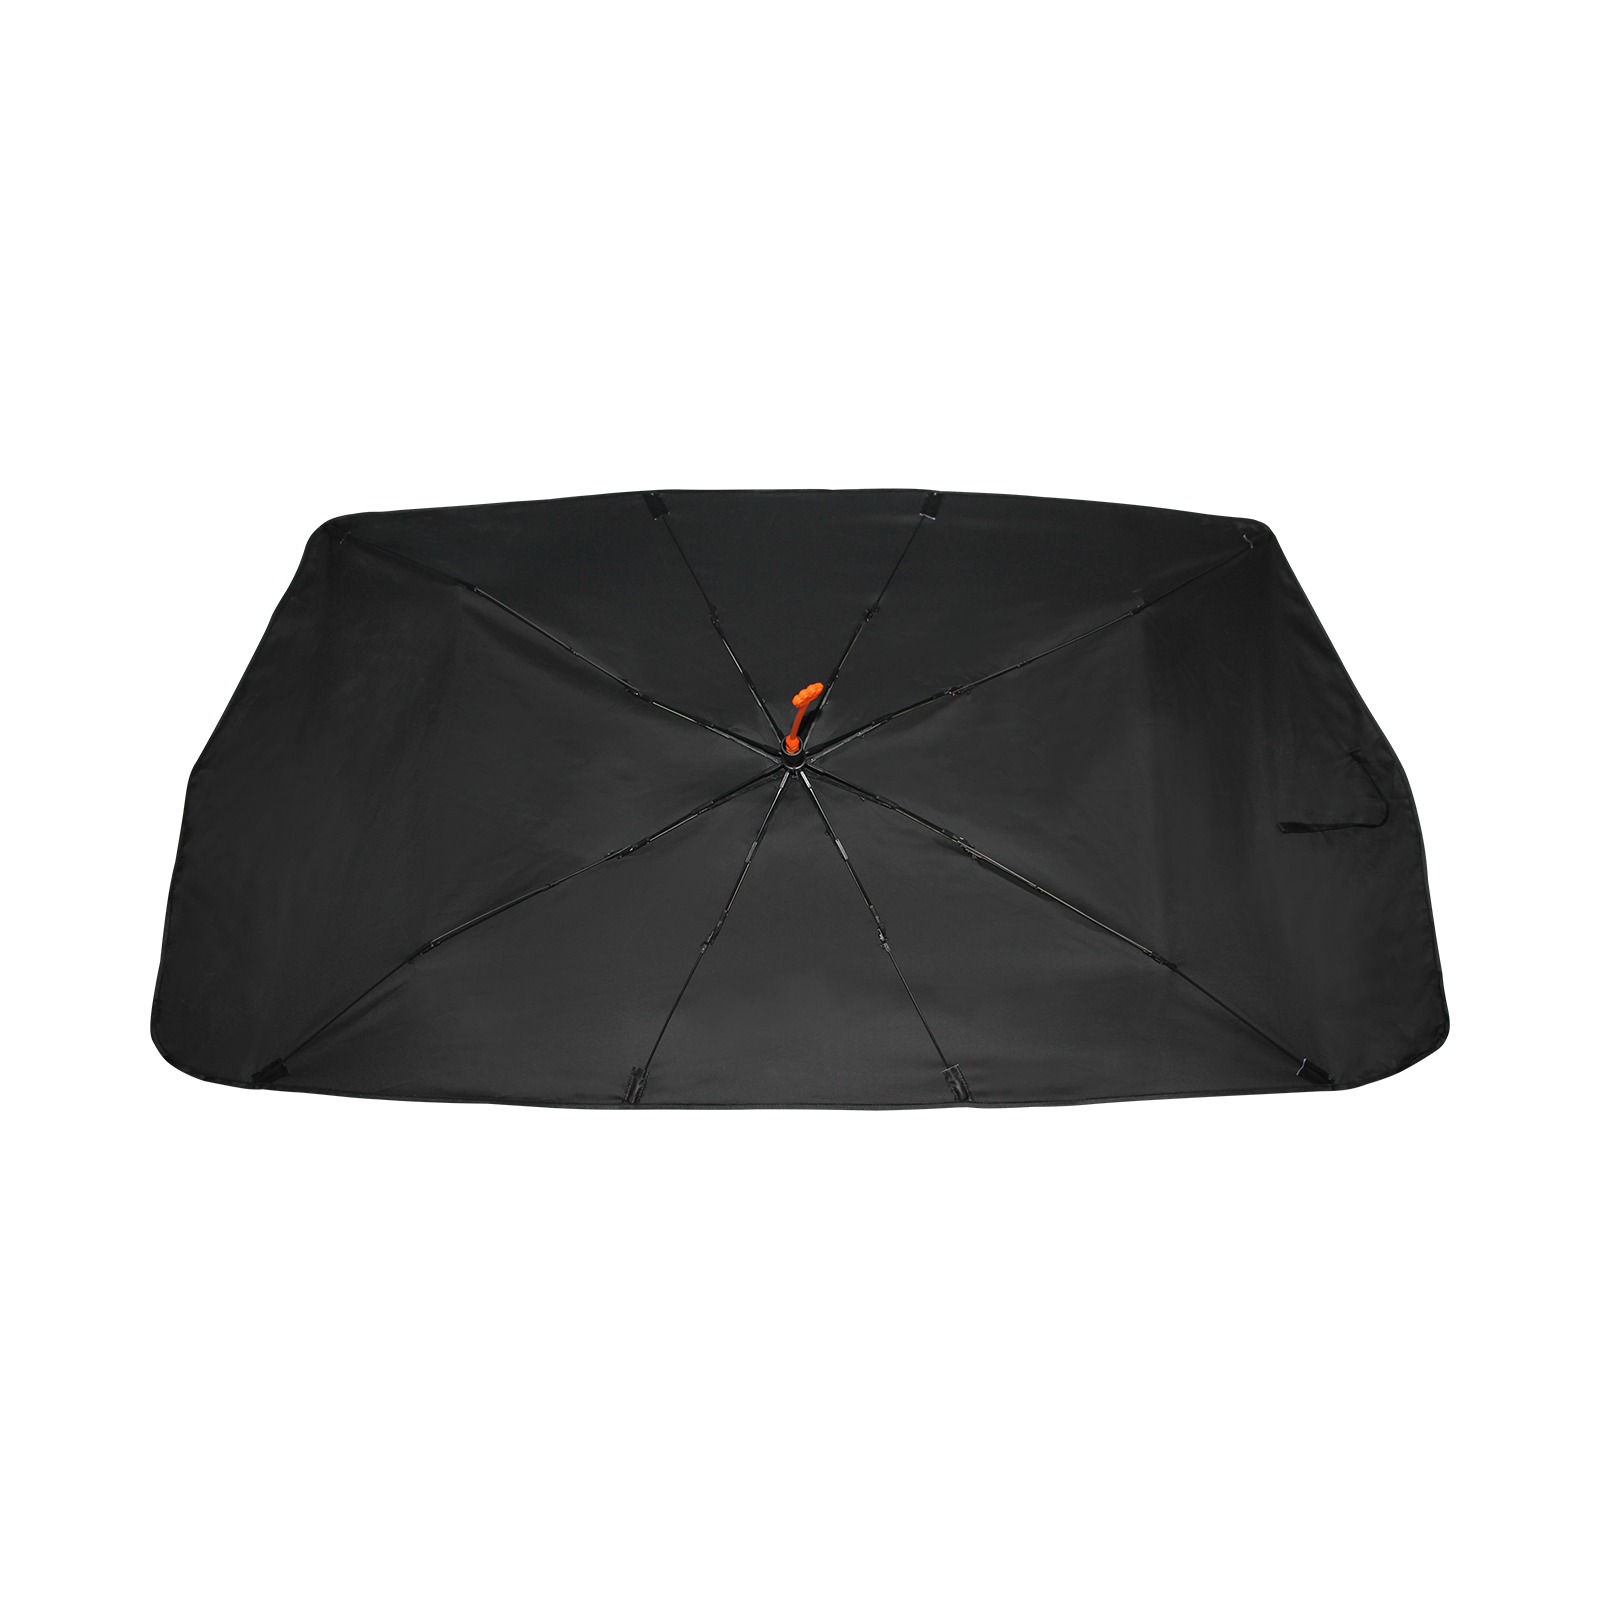 sunshade Tampa Bay Buc's Car Sun Shade Umbrella 58"x29"